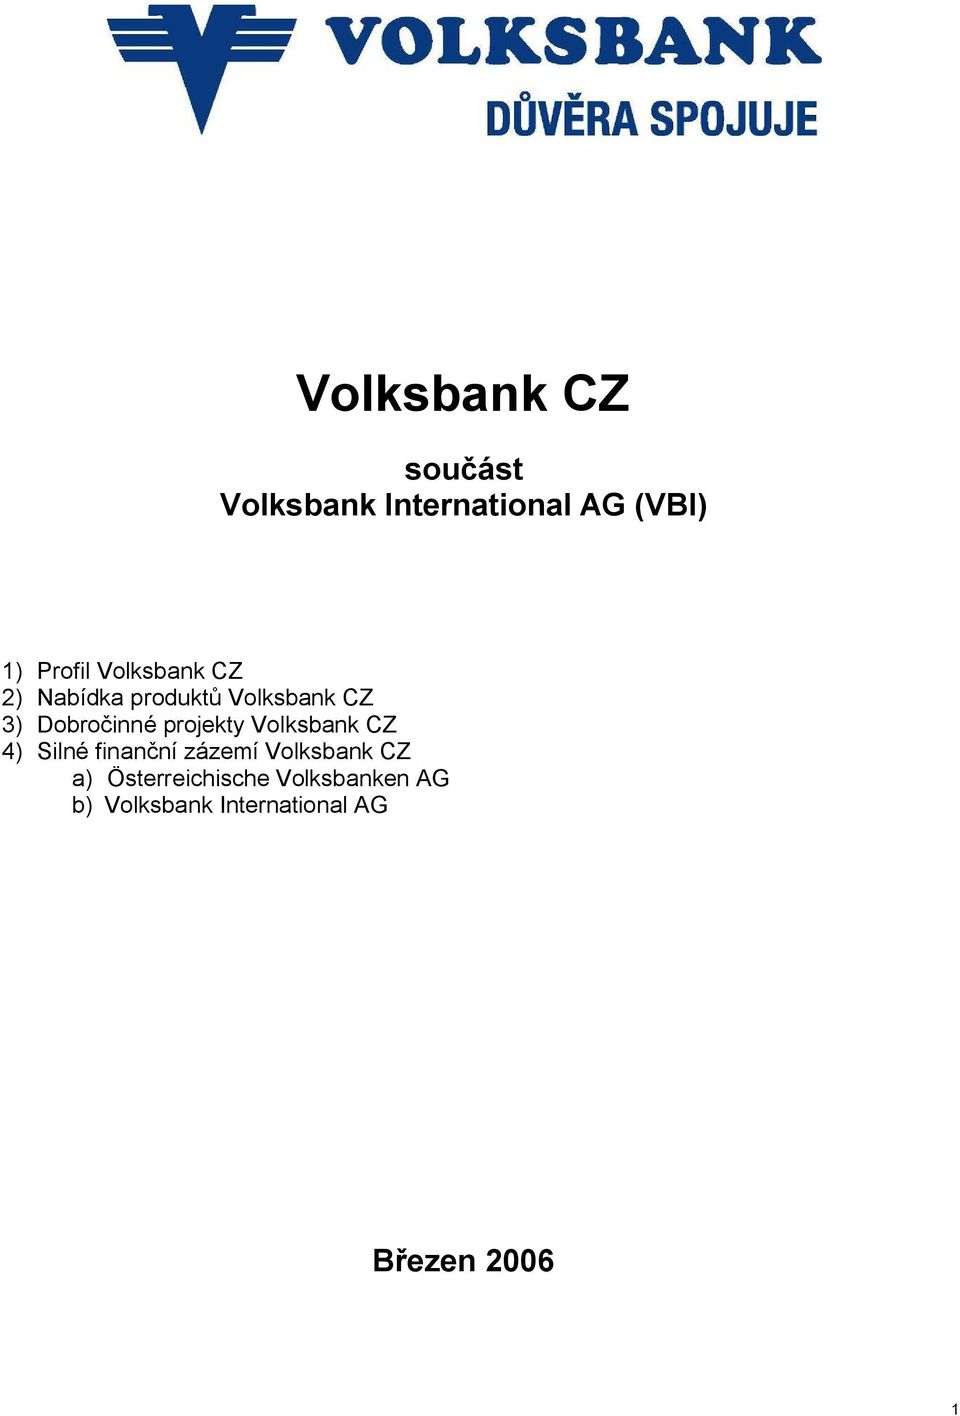 projekty Volksbank CZ 4) Silné finanční zázemí Volksbank CZ a)